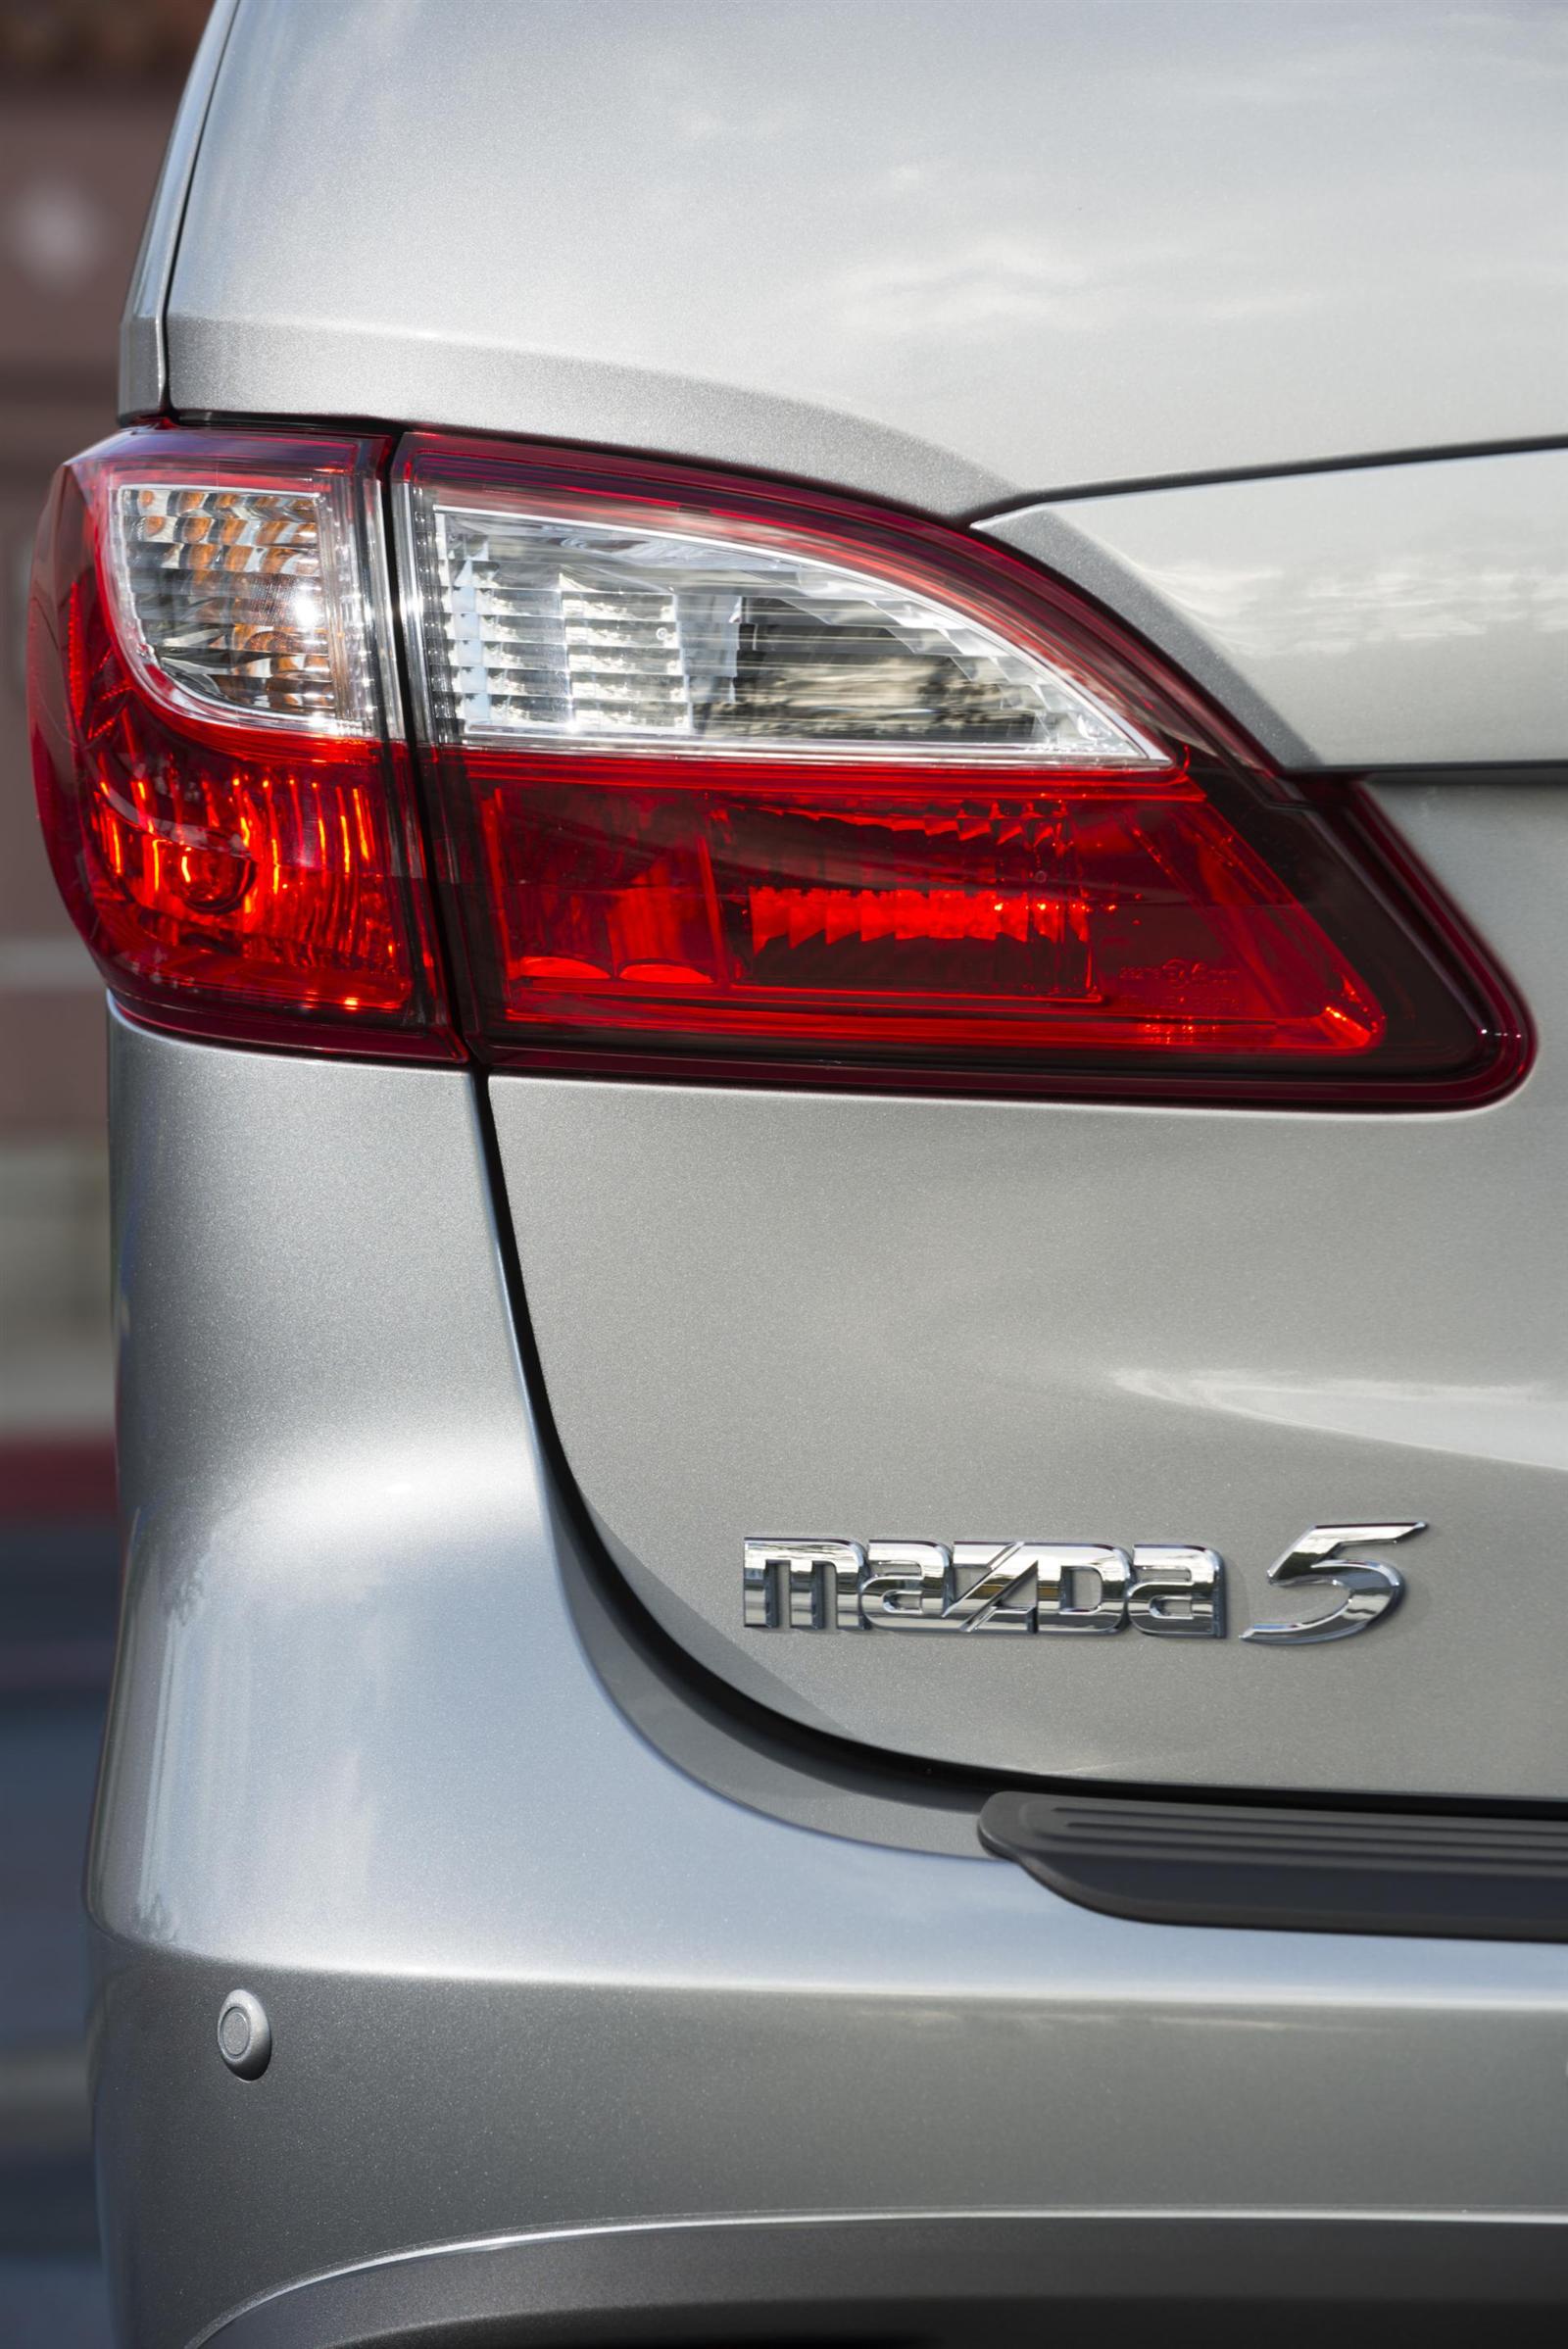 2014 Mazda 5